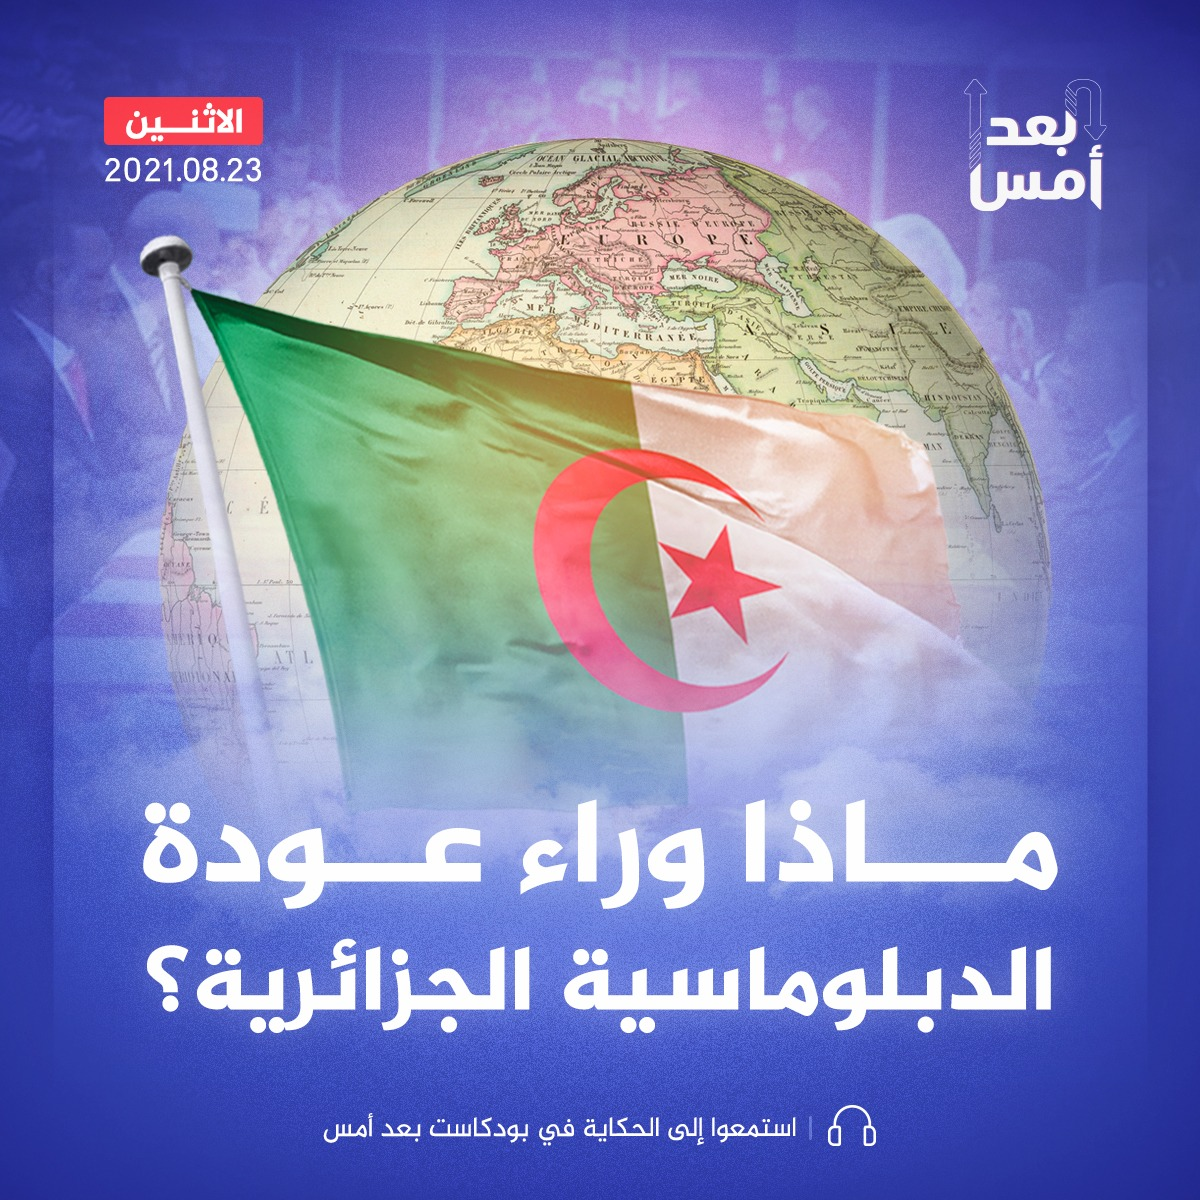 ماذا وراء عودة الدبلوماسية الجزائرية؟